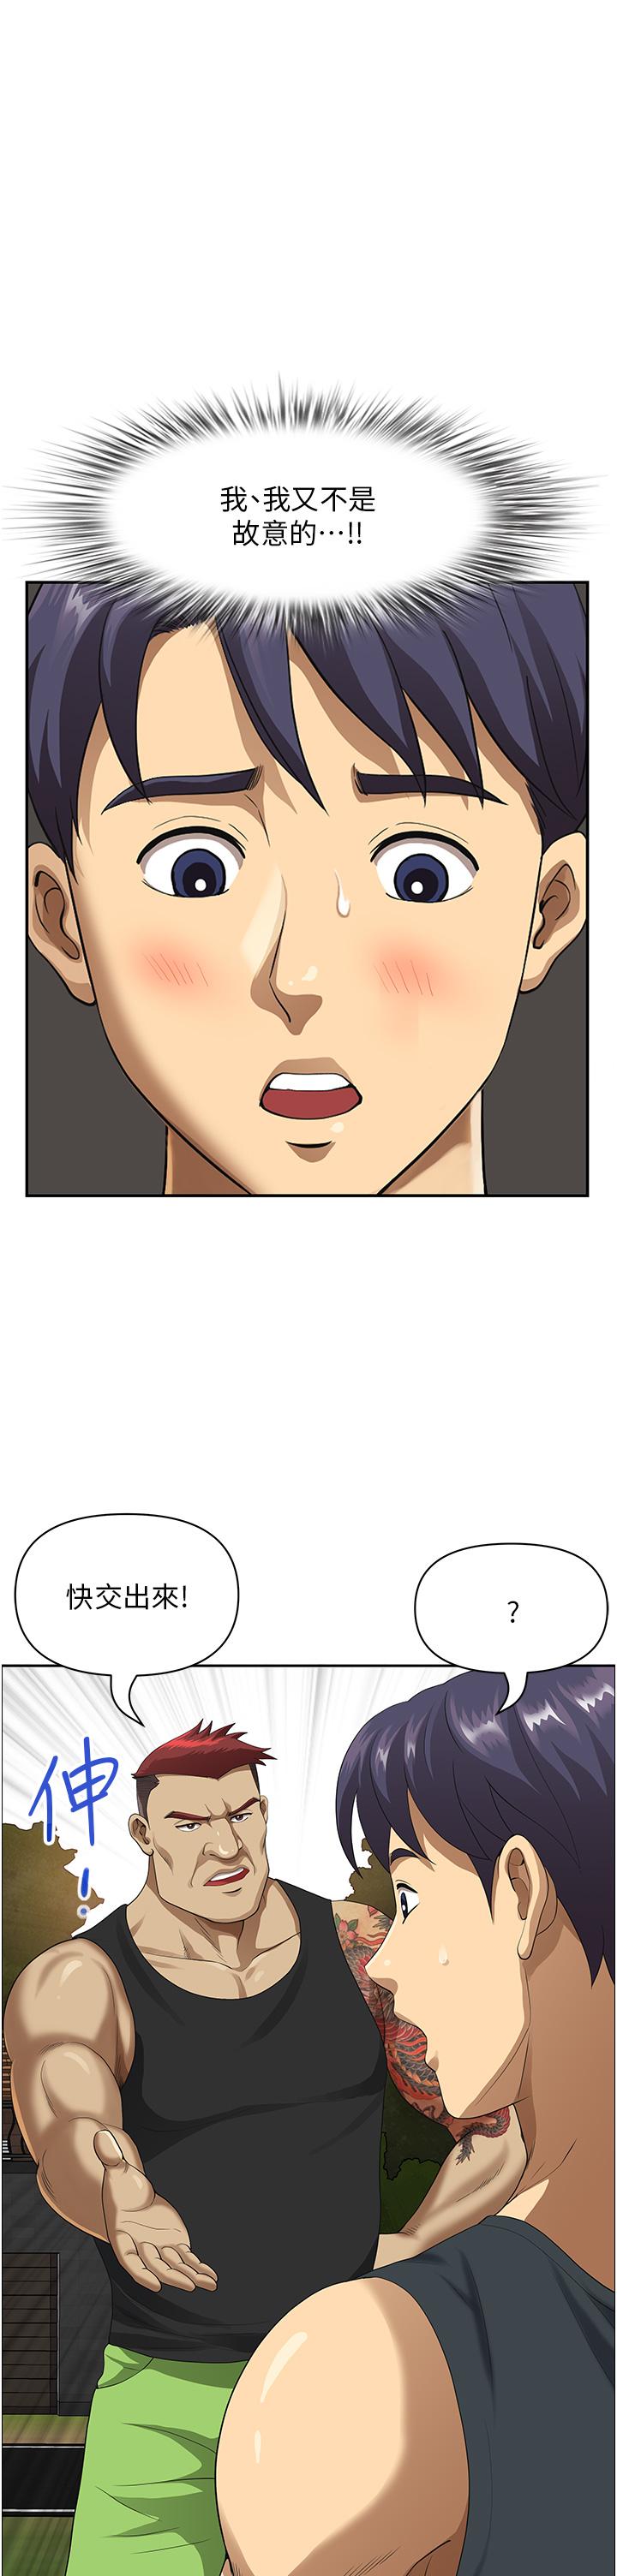 韩国污漫画 地方人妻們 第2话-尽管把身体交给我 7